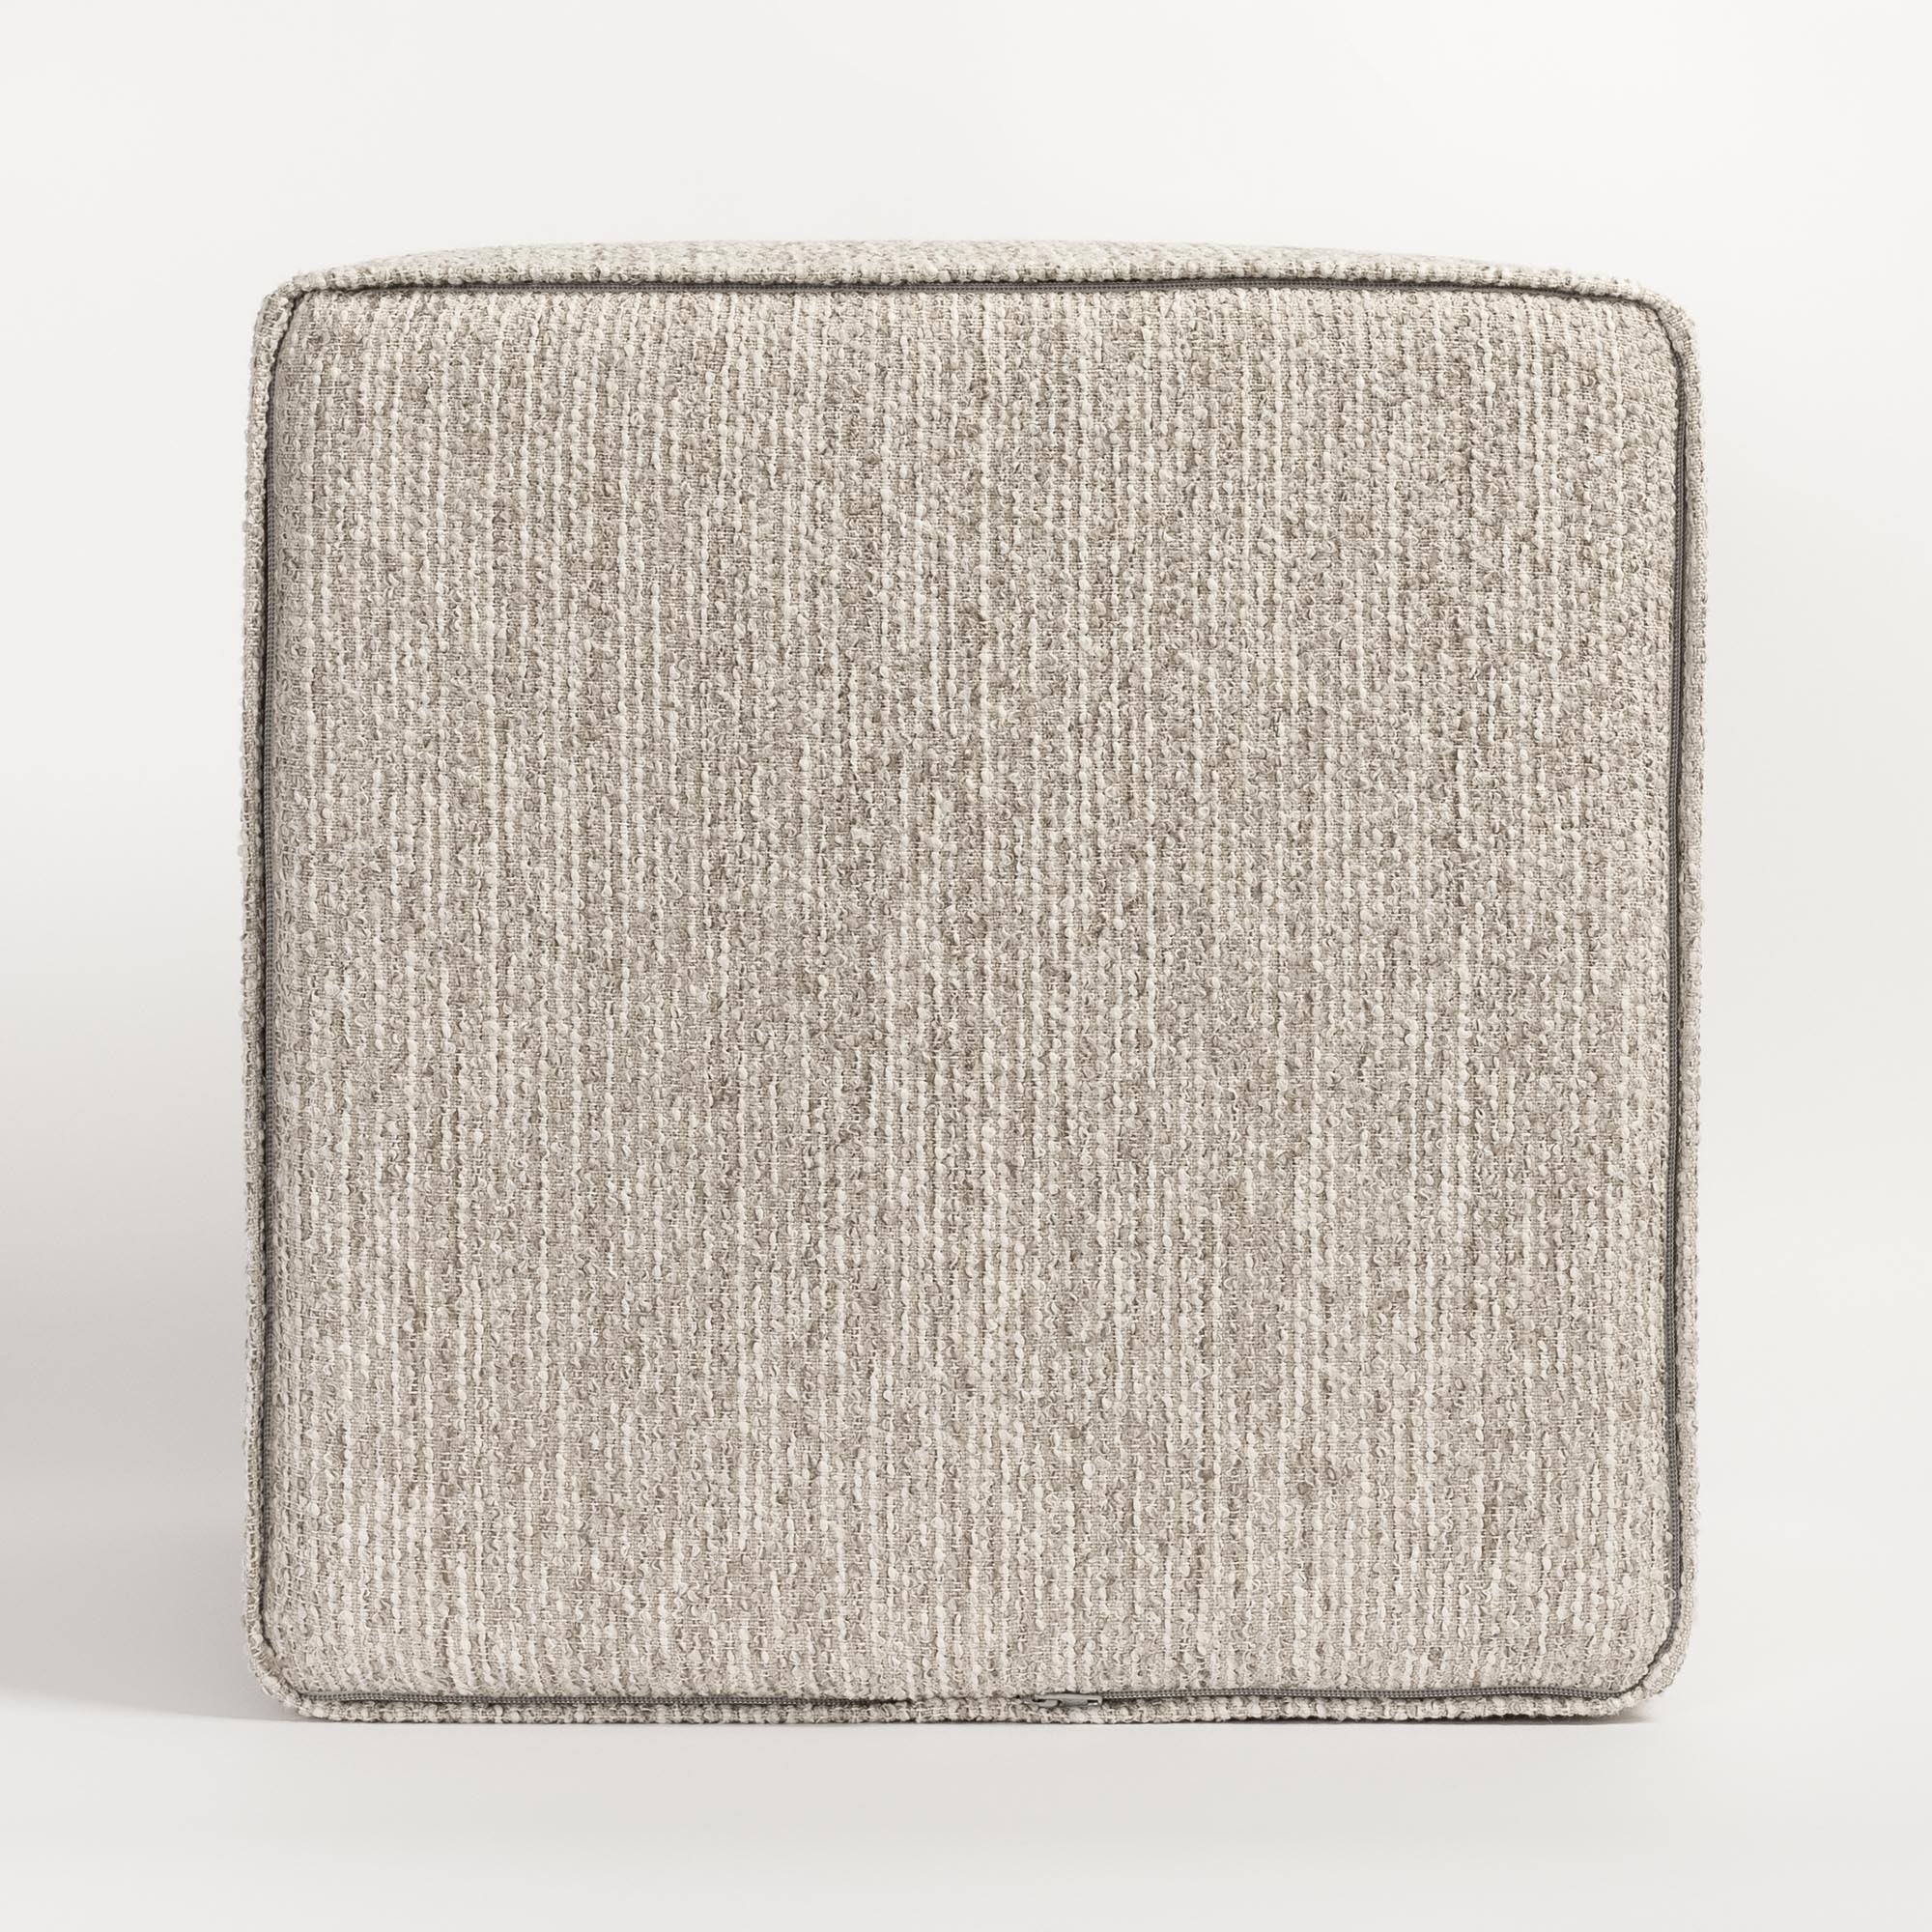 Natura 16x16 Cube Ottoman, Linen : a neutral greige high performance fabric ottoman : Bottom view